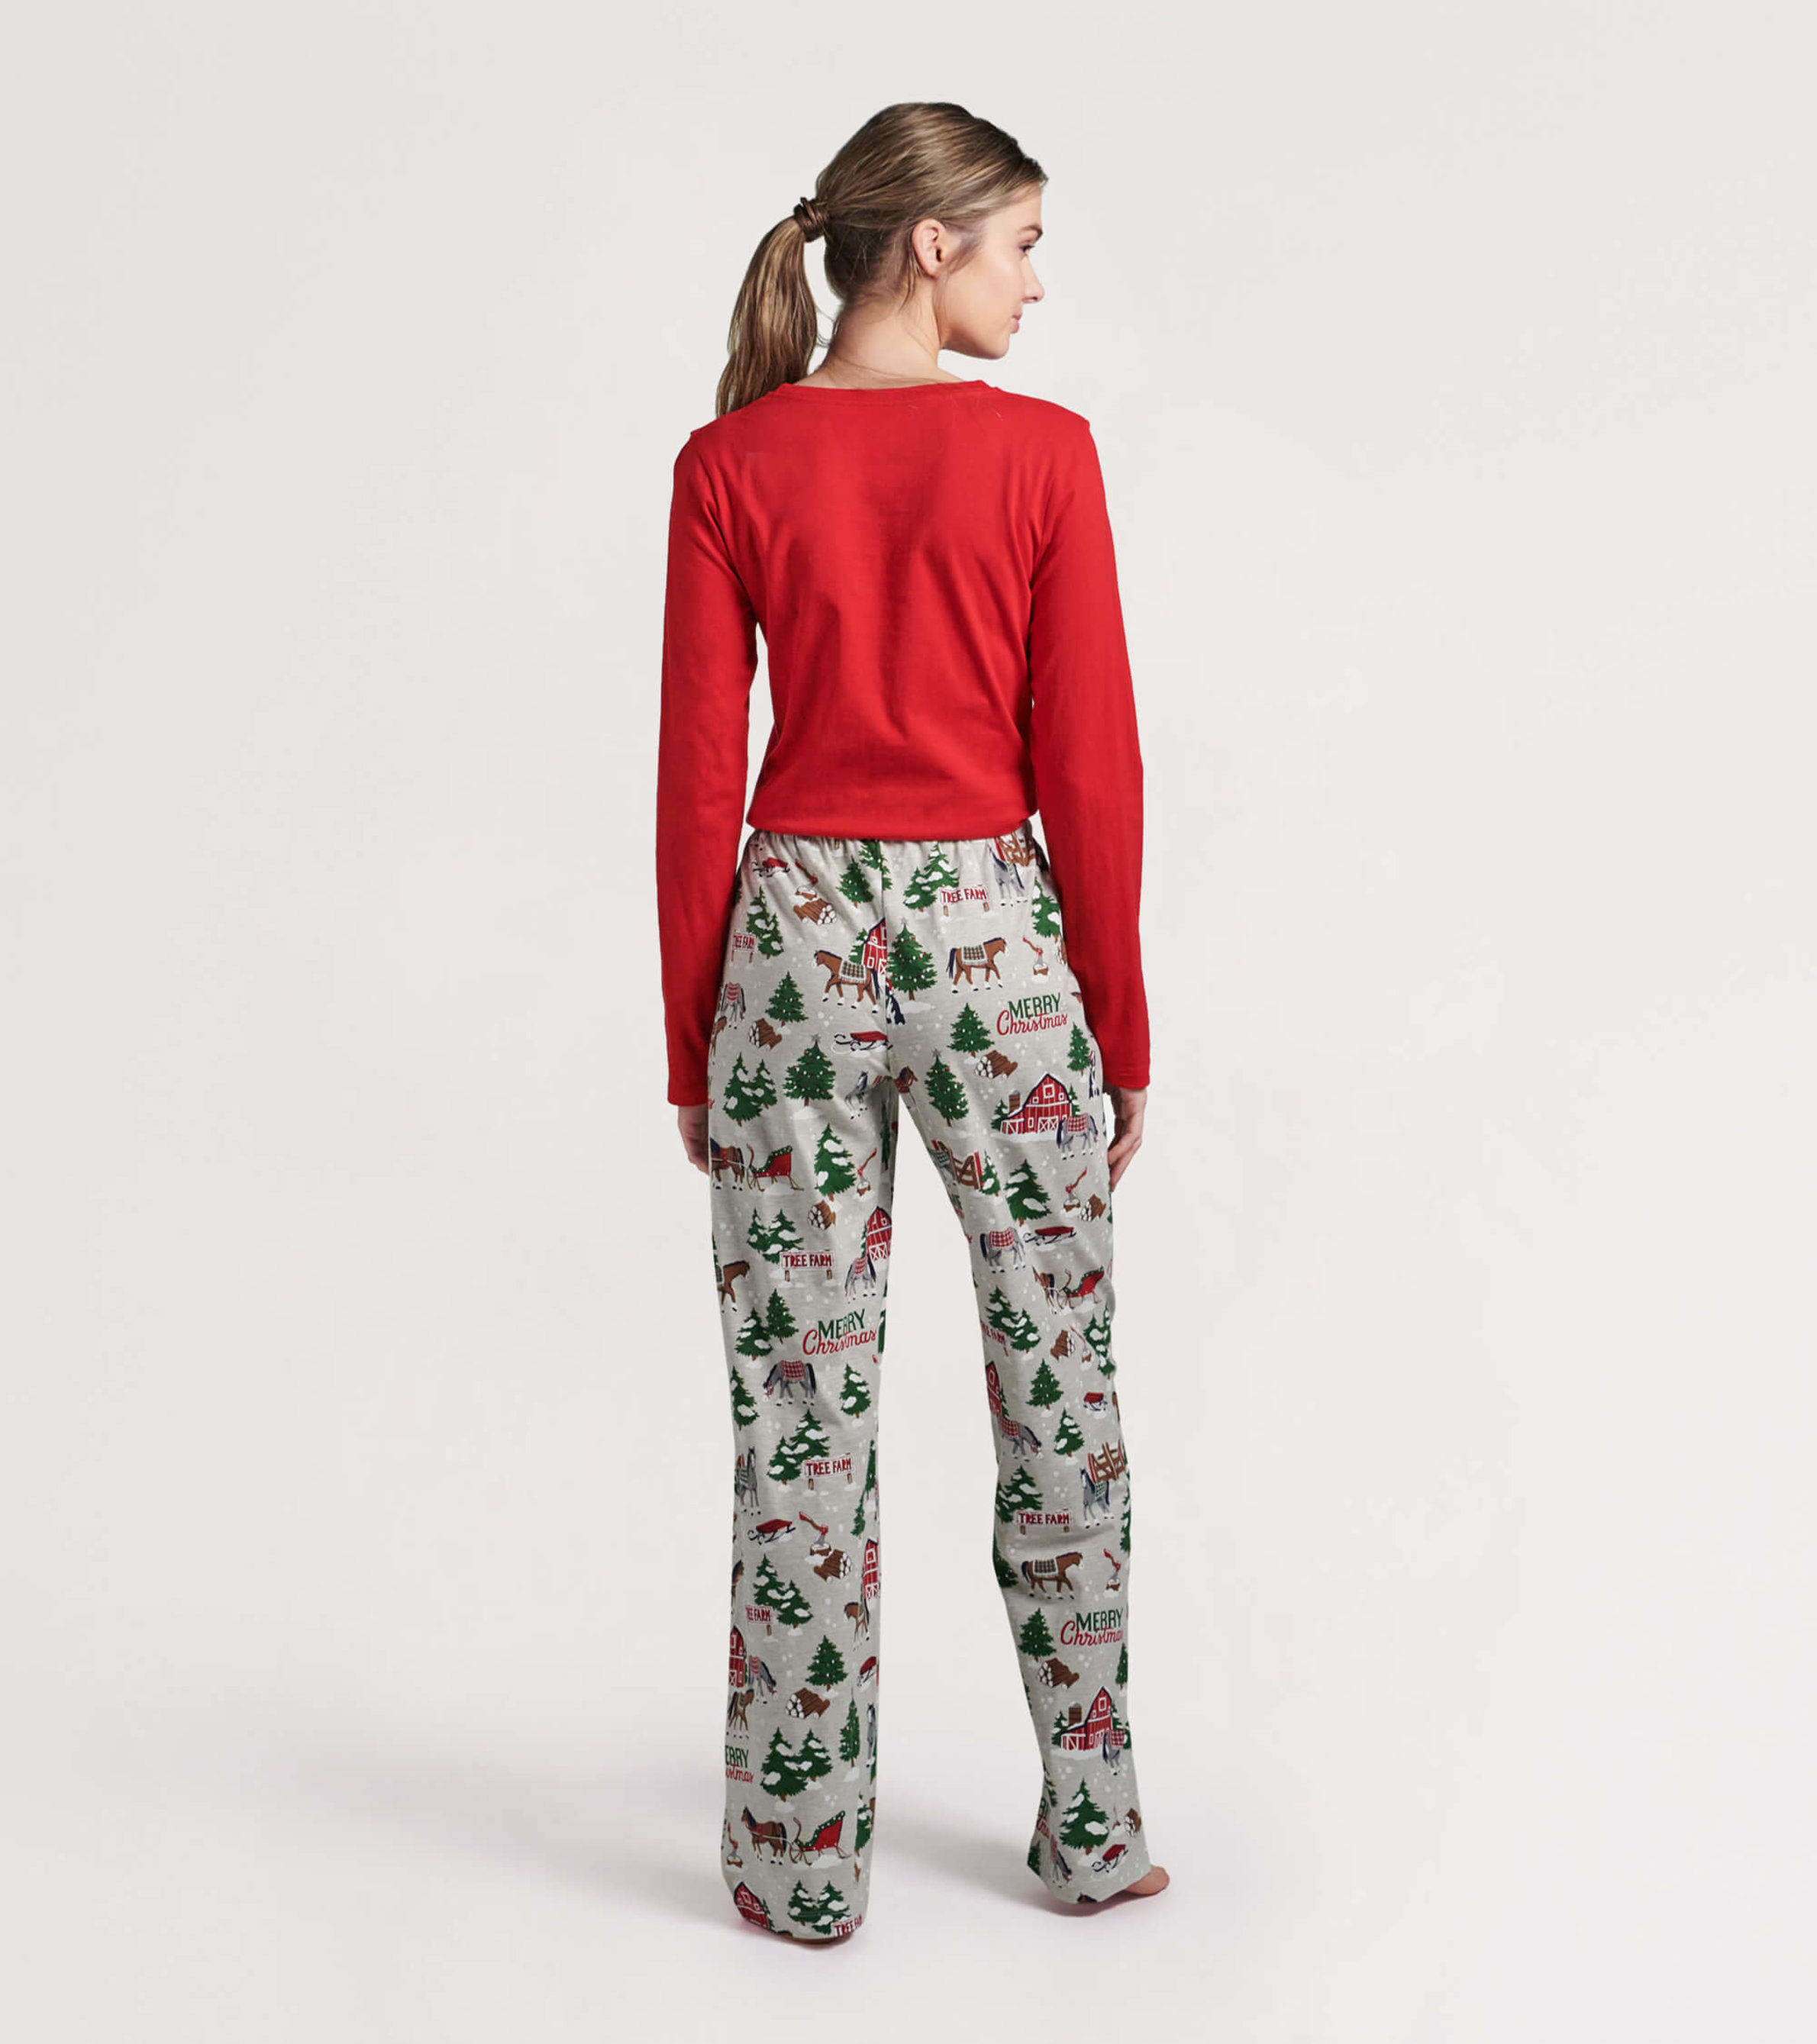 Women's Knit Print Christmas Pants